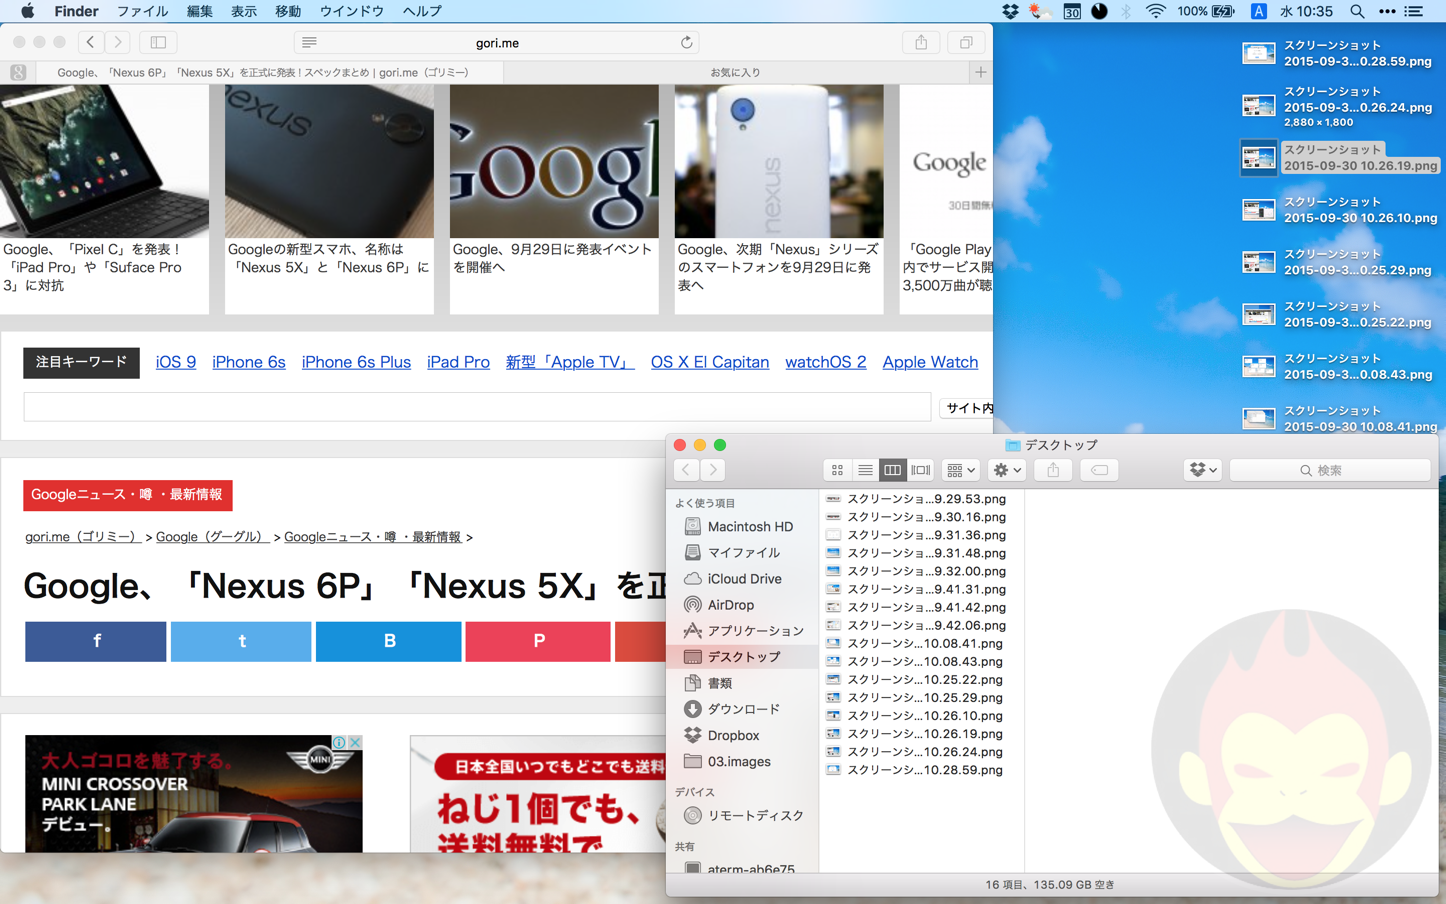 OS-X-El-Capitan-Features-16.png